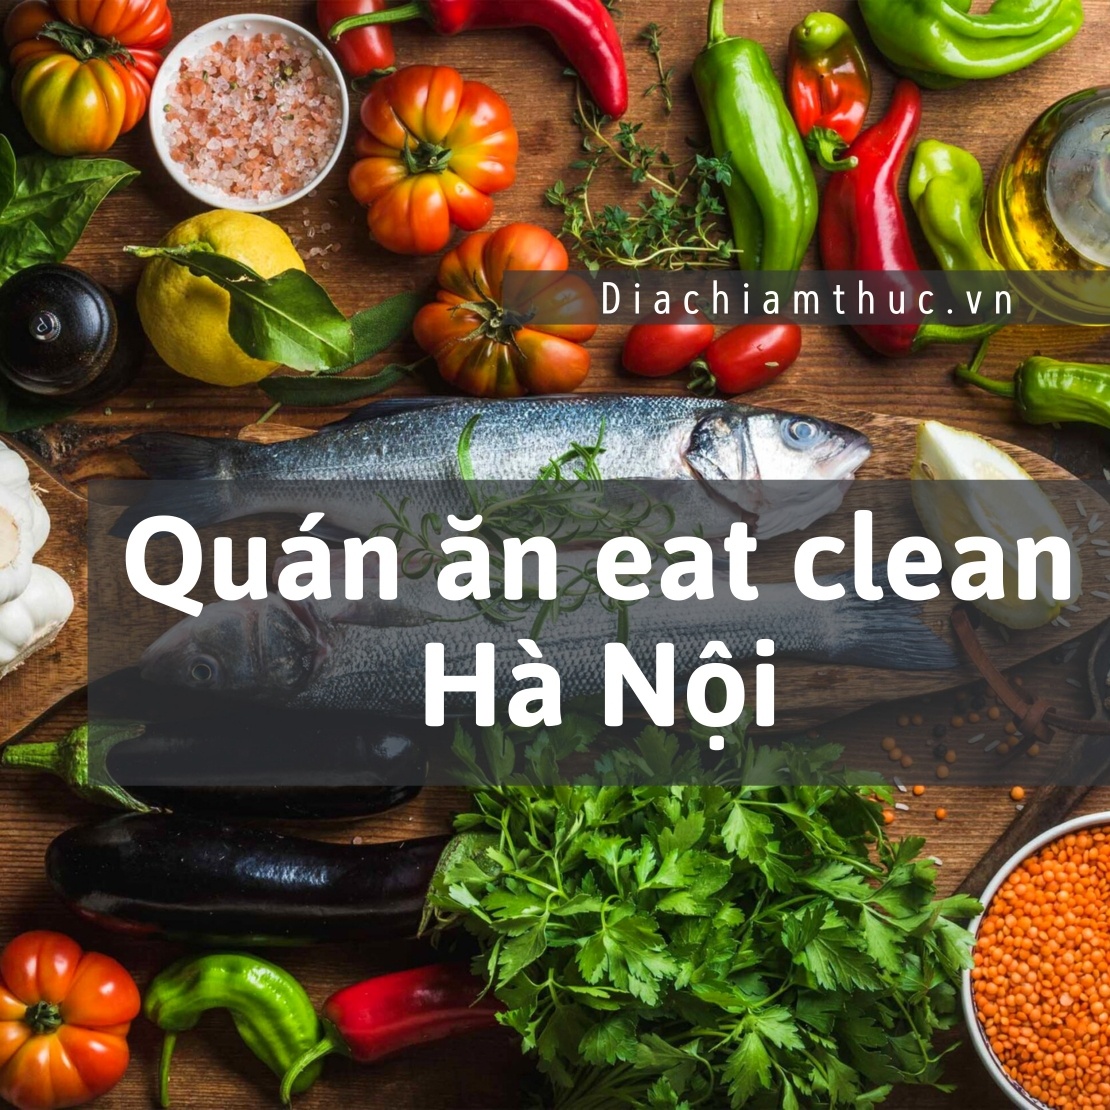 Quán ăn eat clean Hà Nội